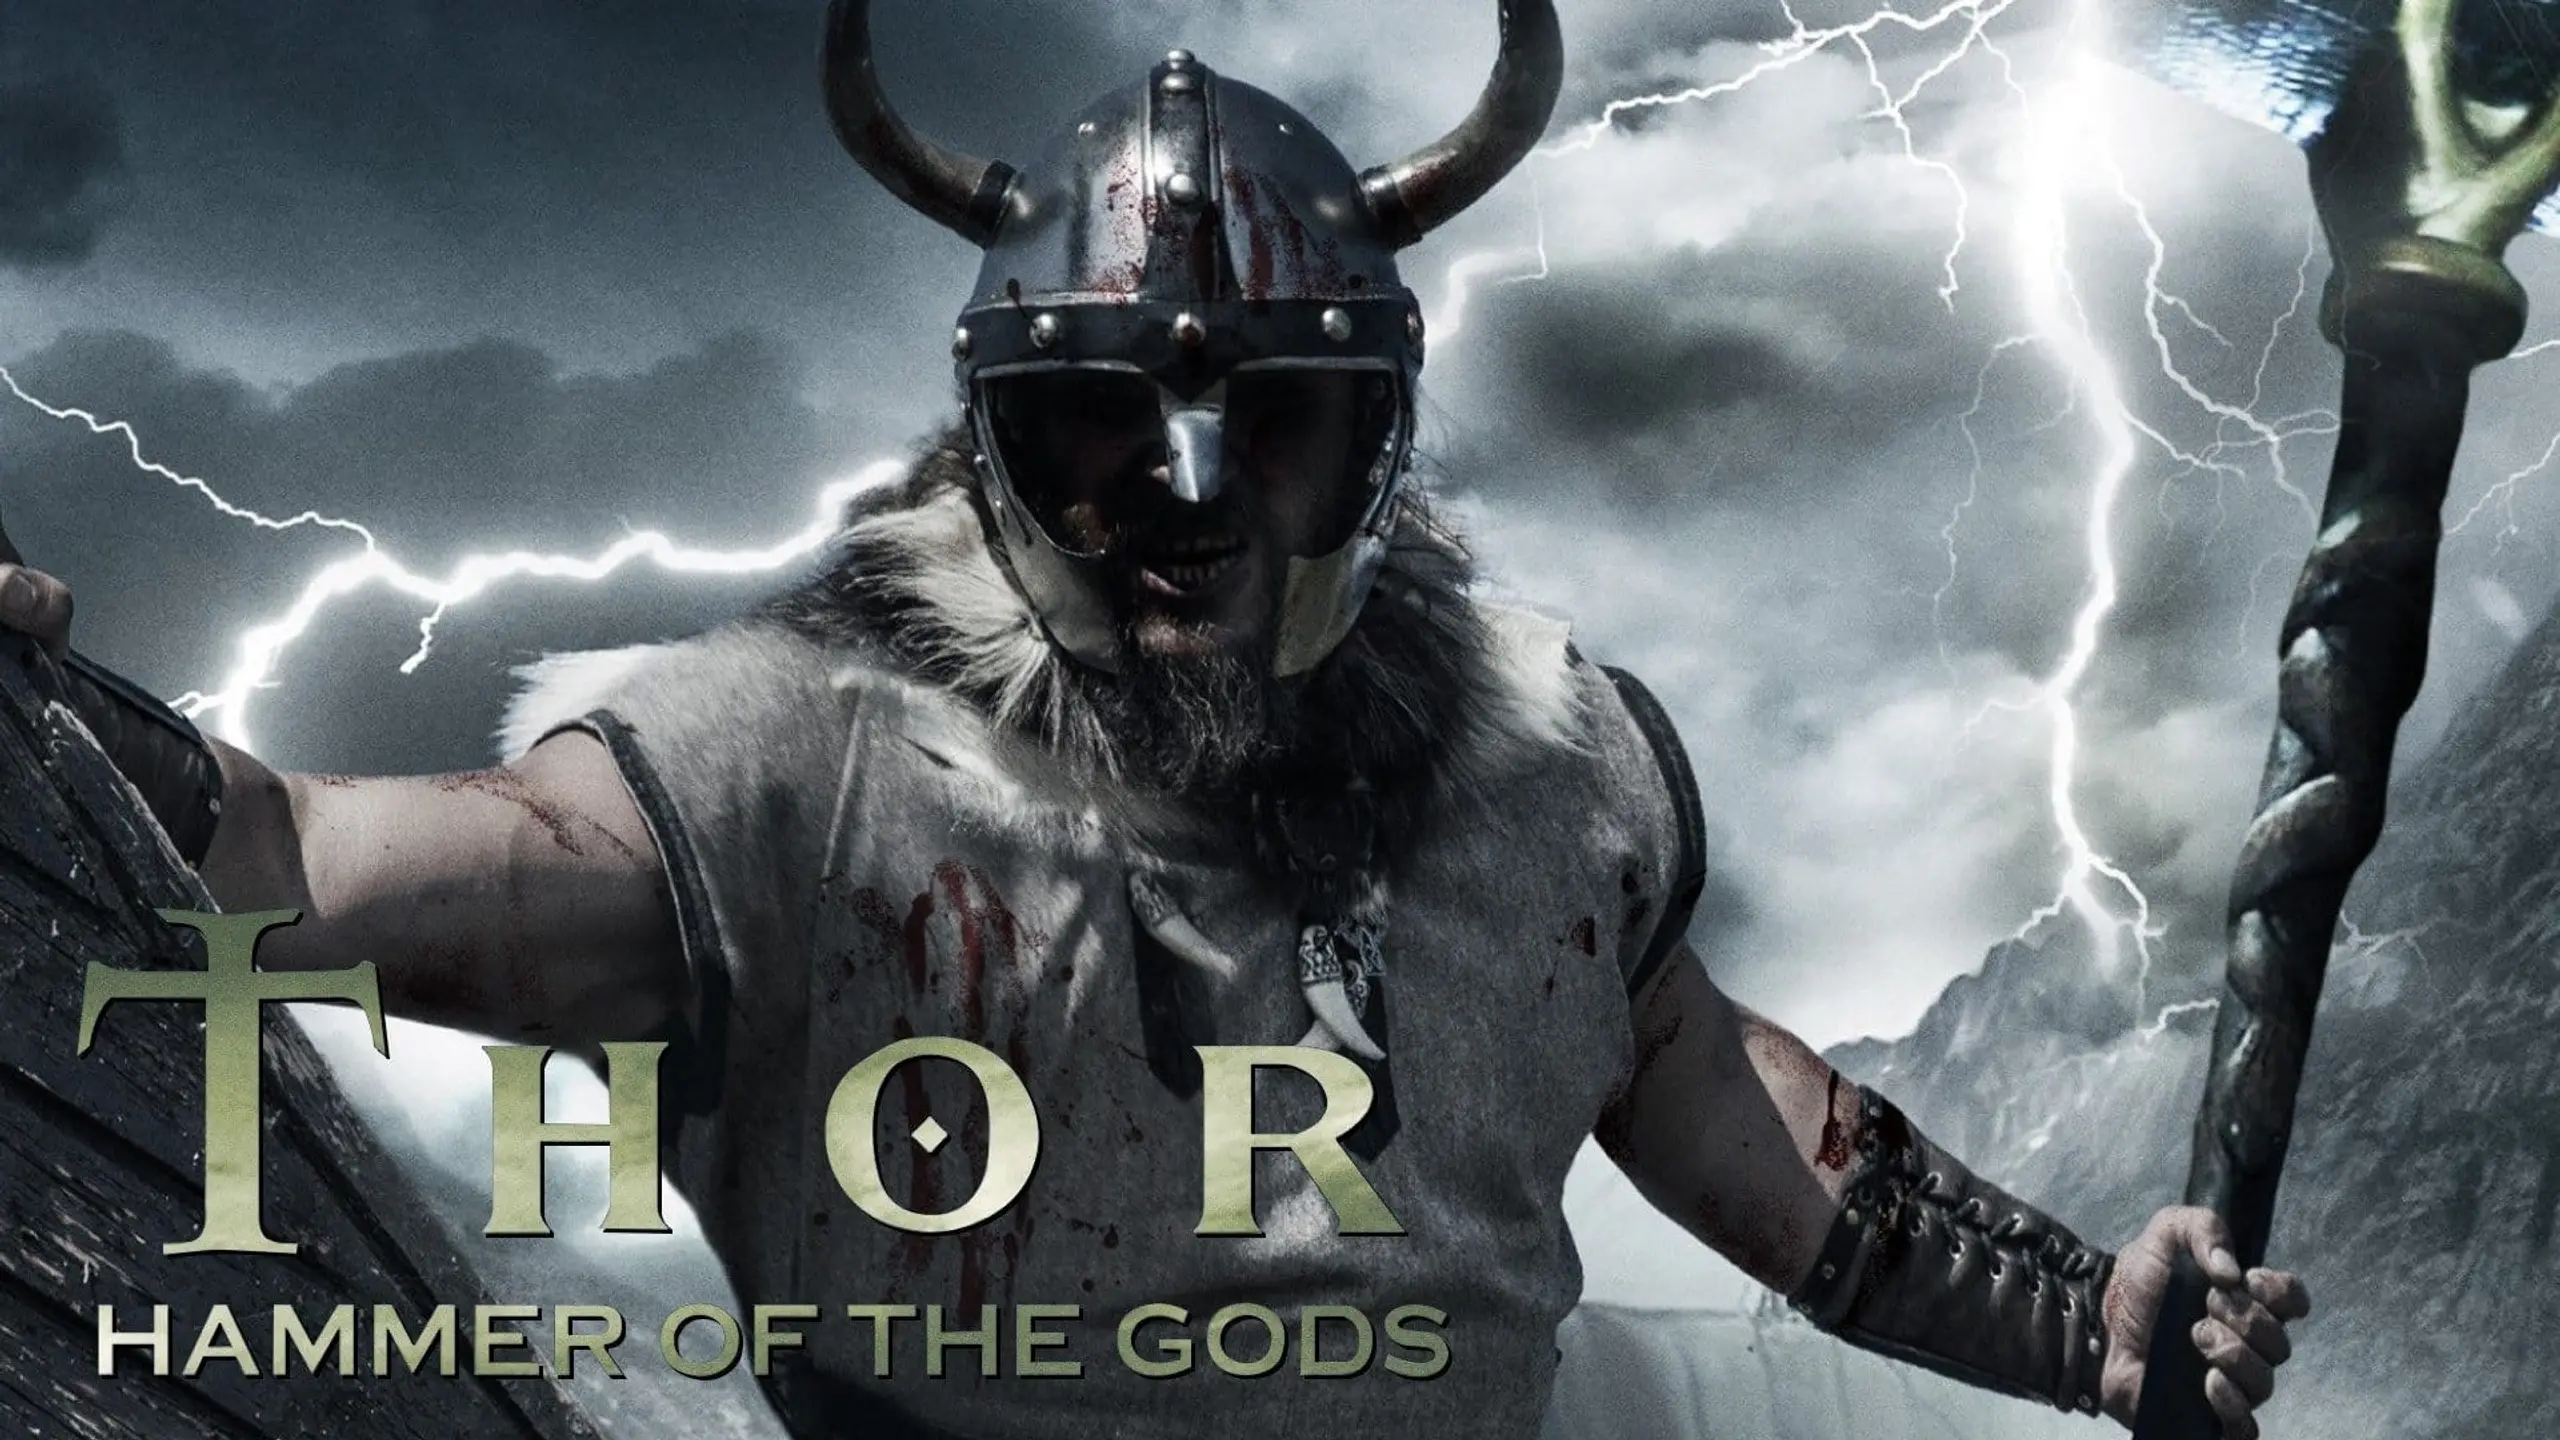 Thor: Der Hammer Gottes